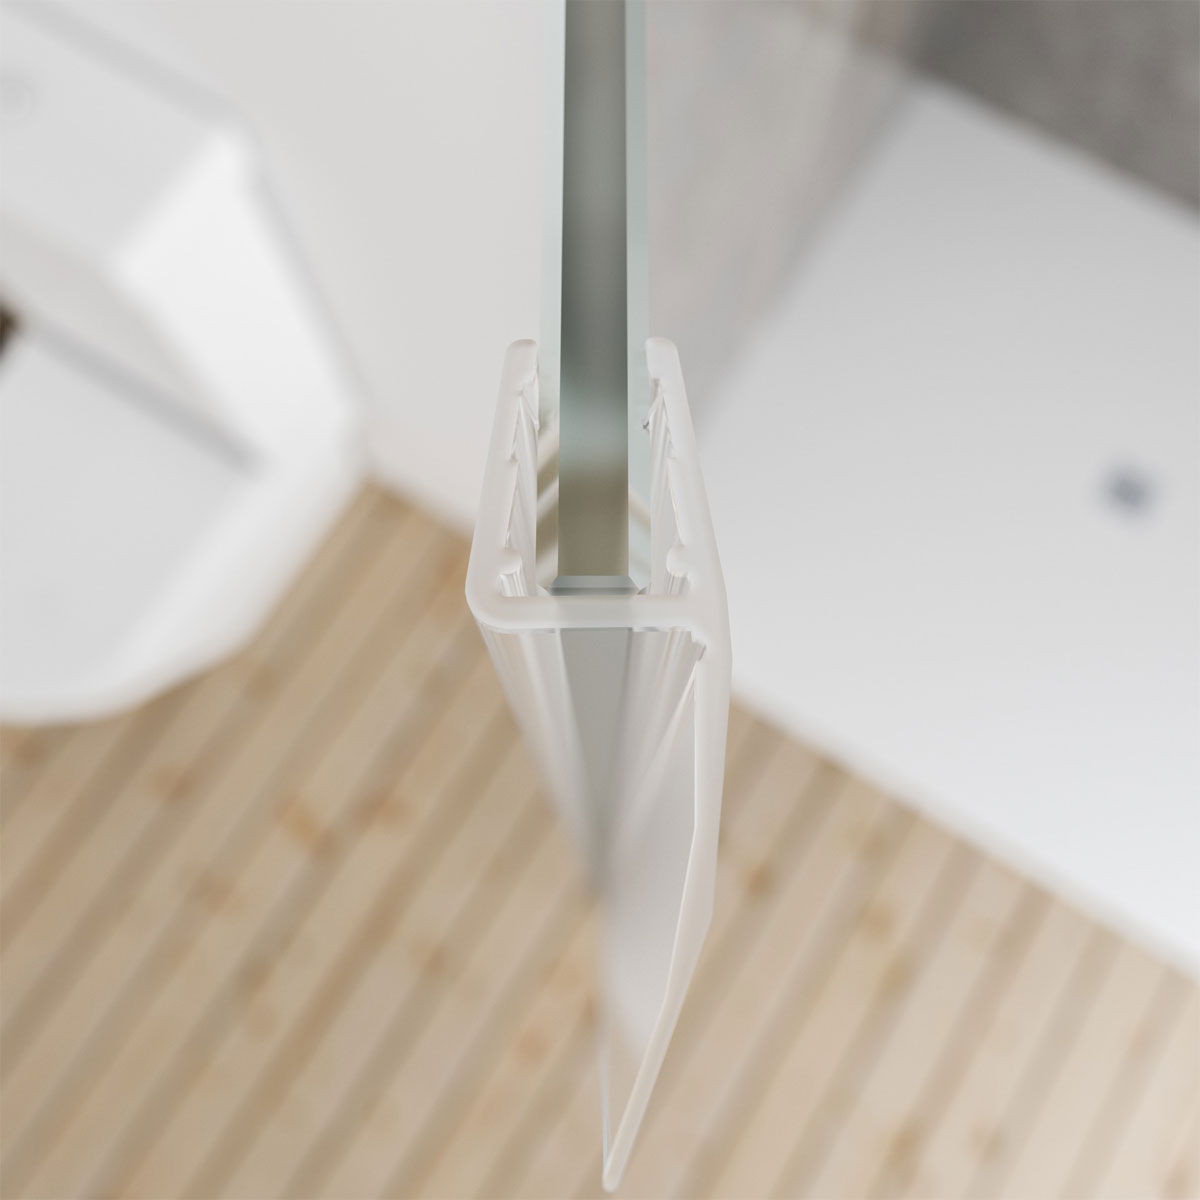 Dusar Universal-Dichtleiste Dichtung senkrecht für 5,6,8 mm Glas